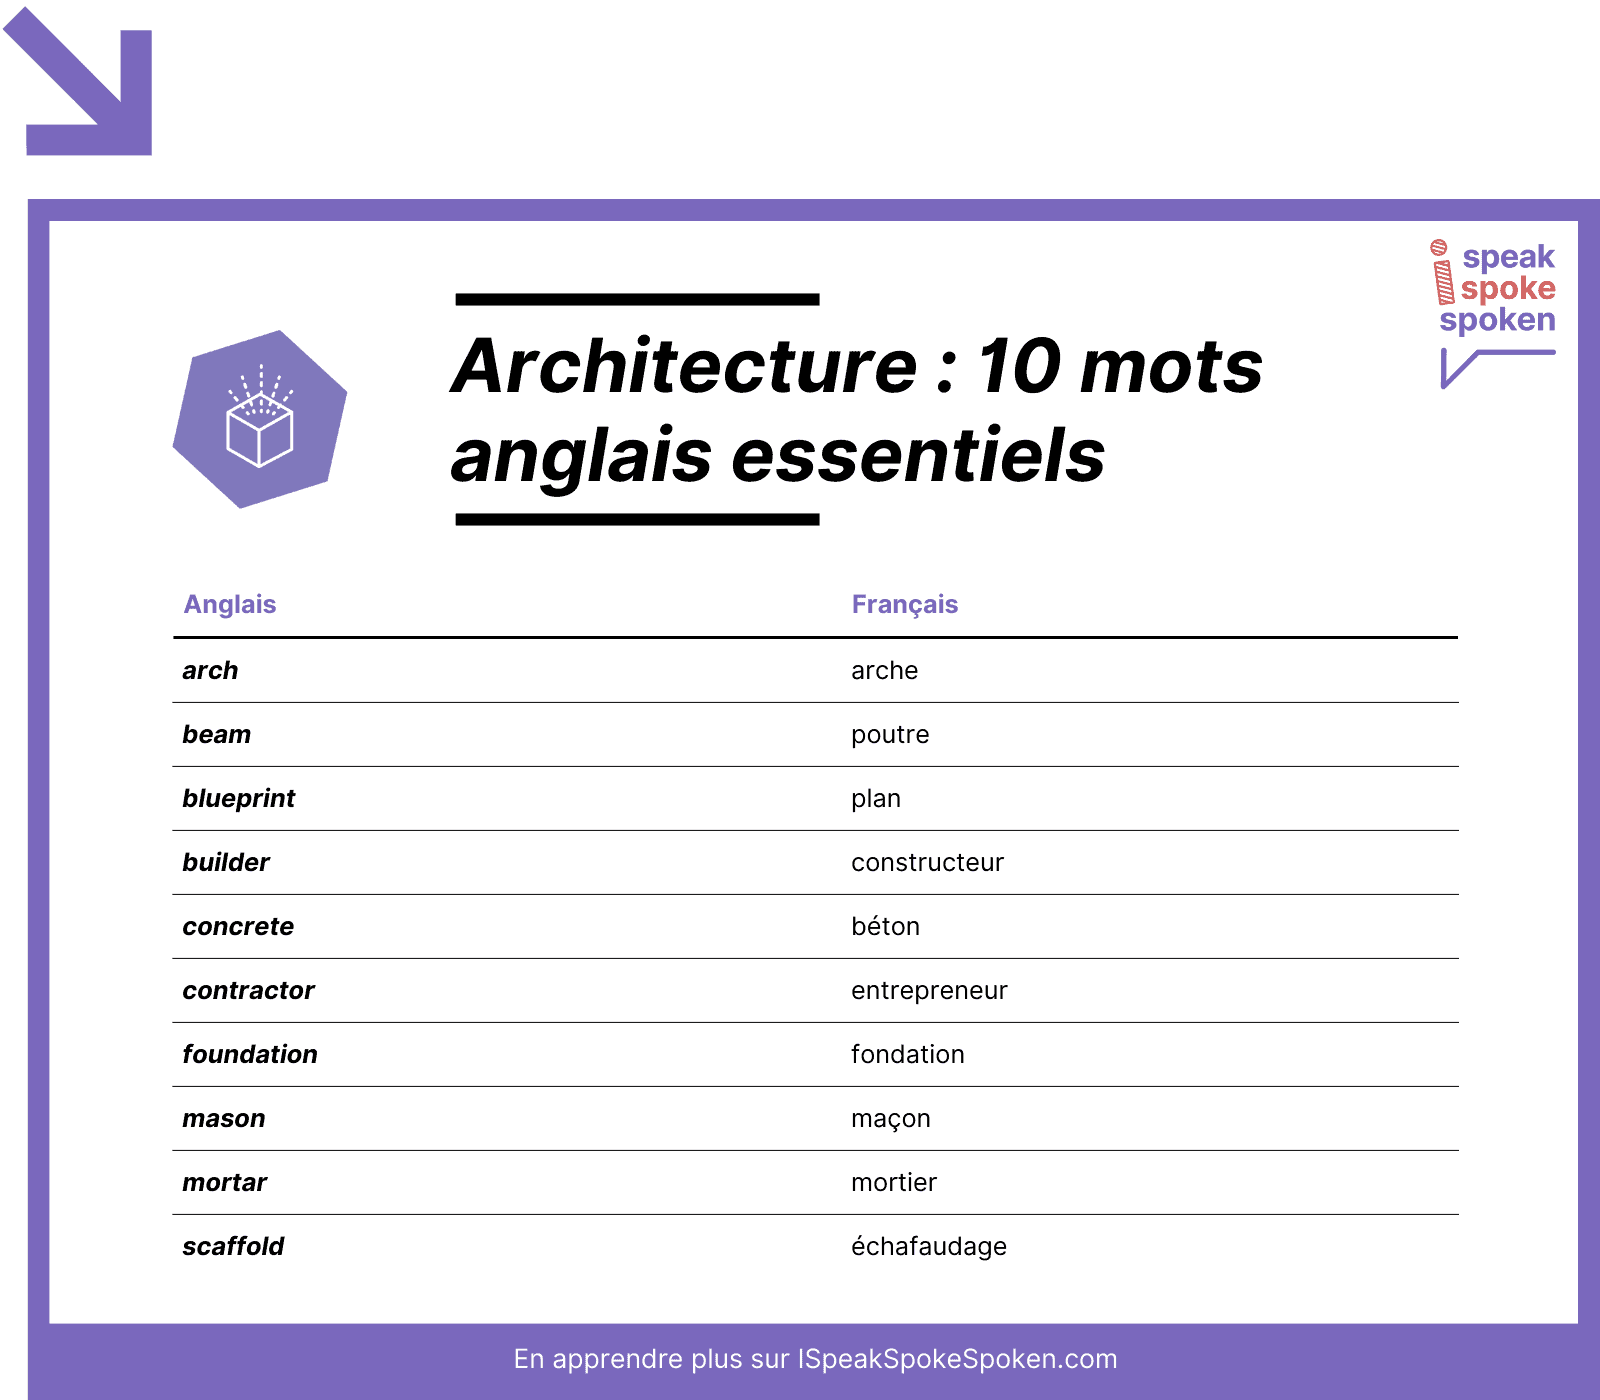 10 mots de vocabulaire anglais essentiels liés à l’architecture